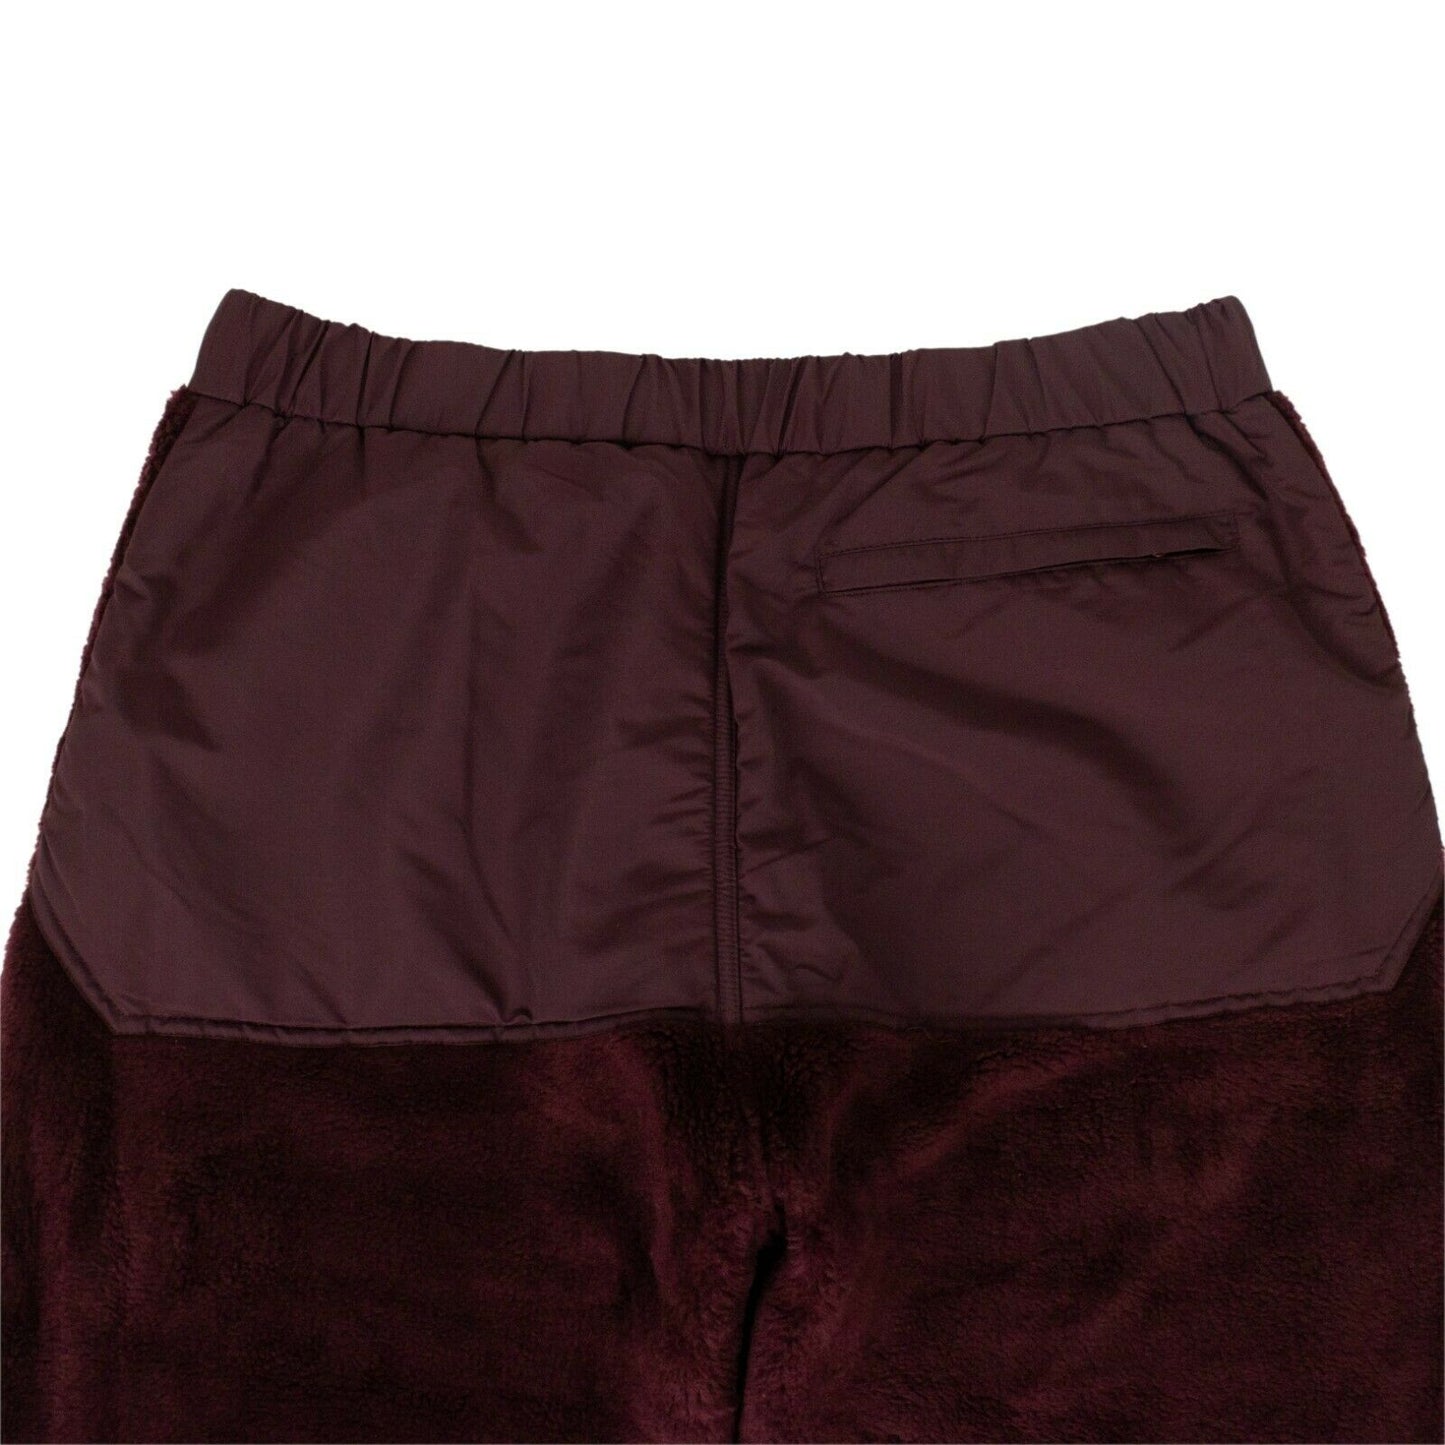 Undercover Acrylic Pants - Bordeaux/Purple